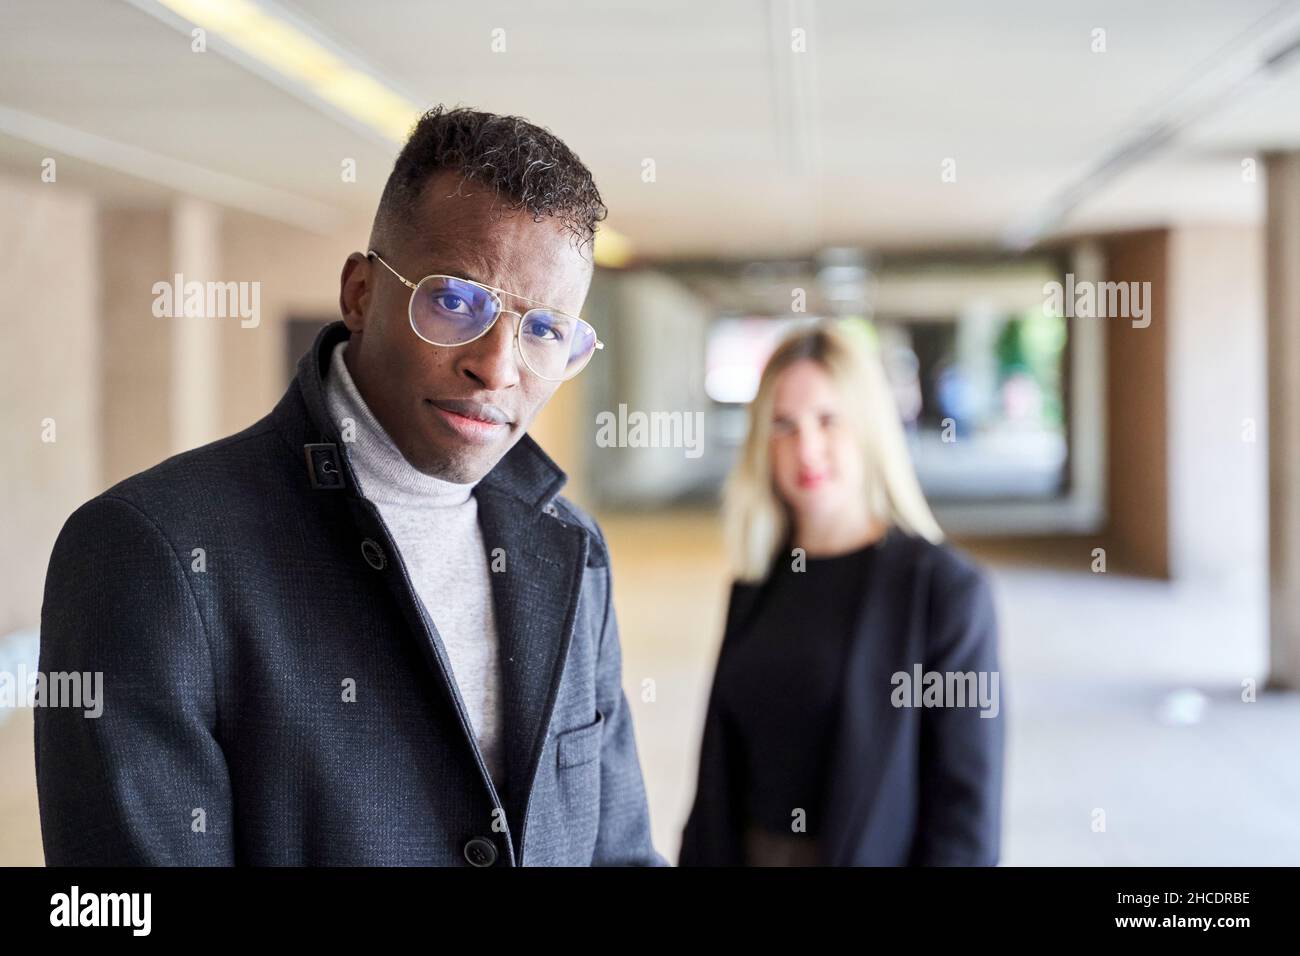 Afroamerikanischer Mann in stilvollem Mantel und Brille, der die Kamera anschaut, während er in einer modernen Passage in der Nähe einer Freundin steht Stockfoto